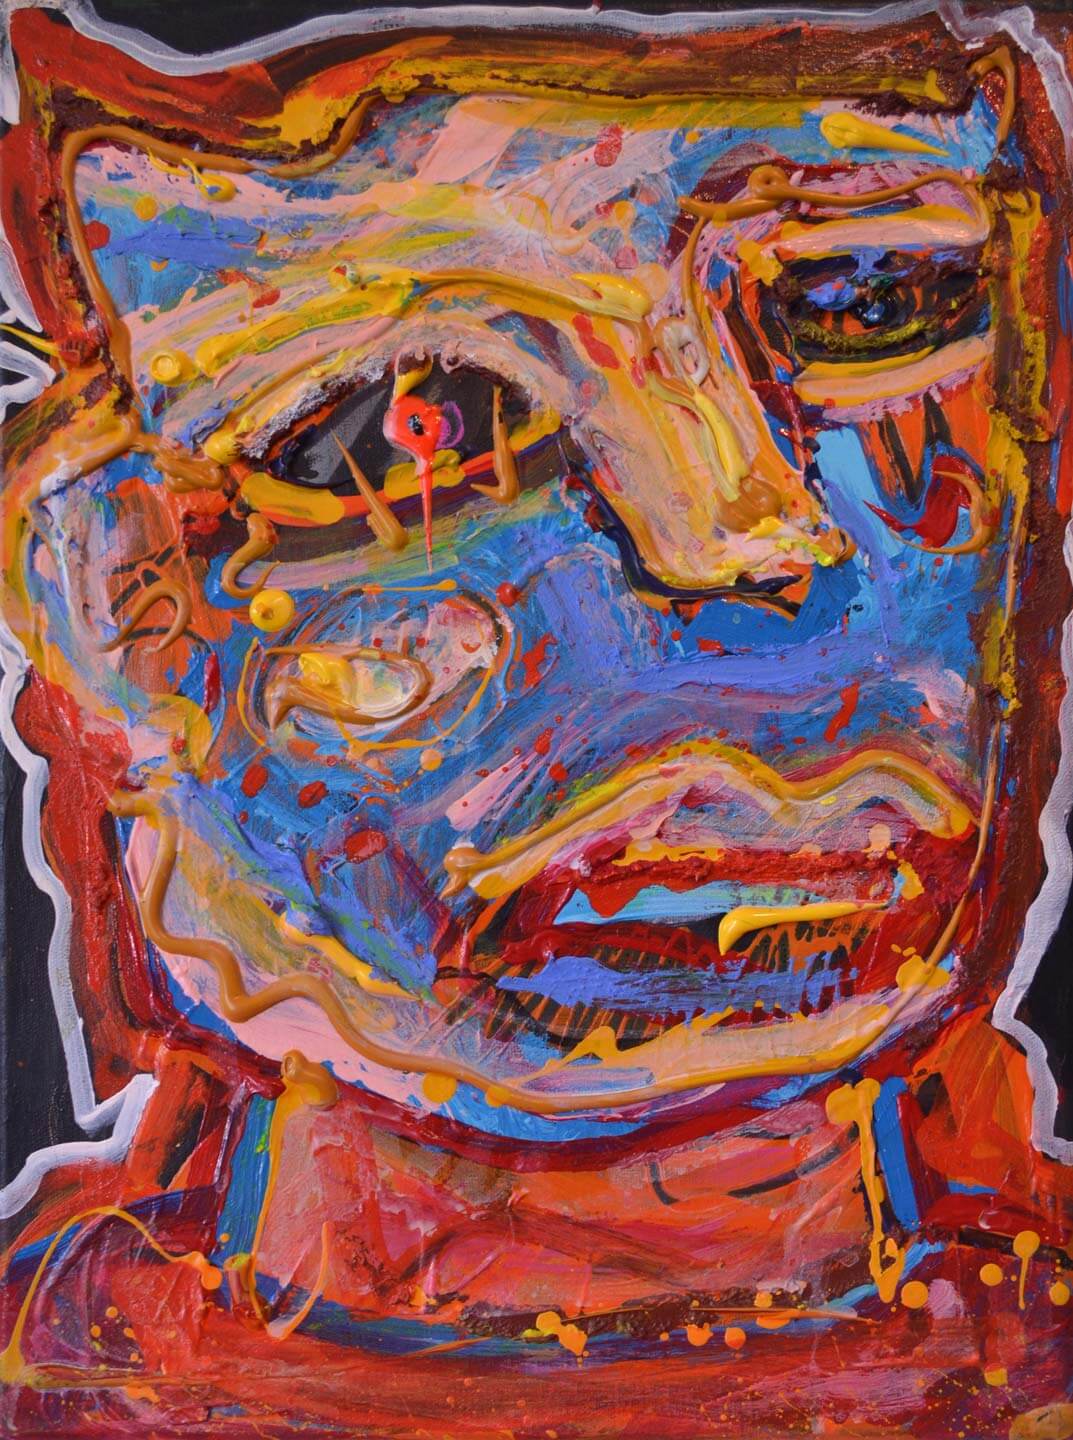 Juan Mariño, Venezuela. Zombie toy, 2014. Acrylic on canvas, 11” x 15”